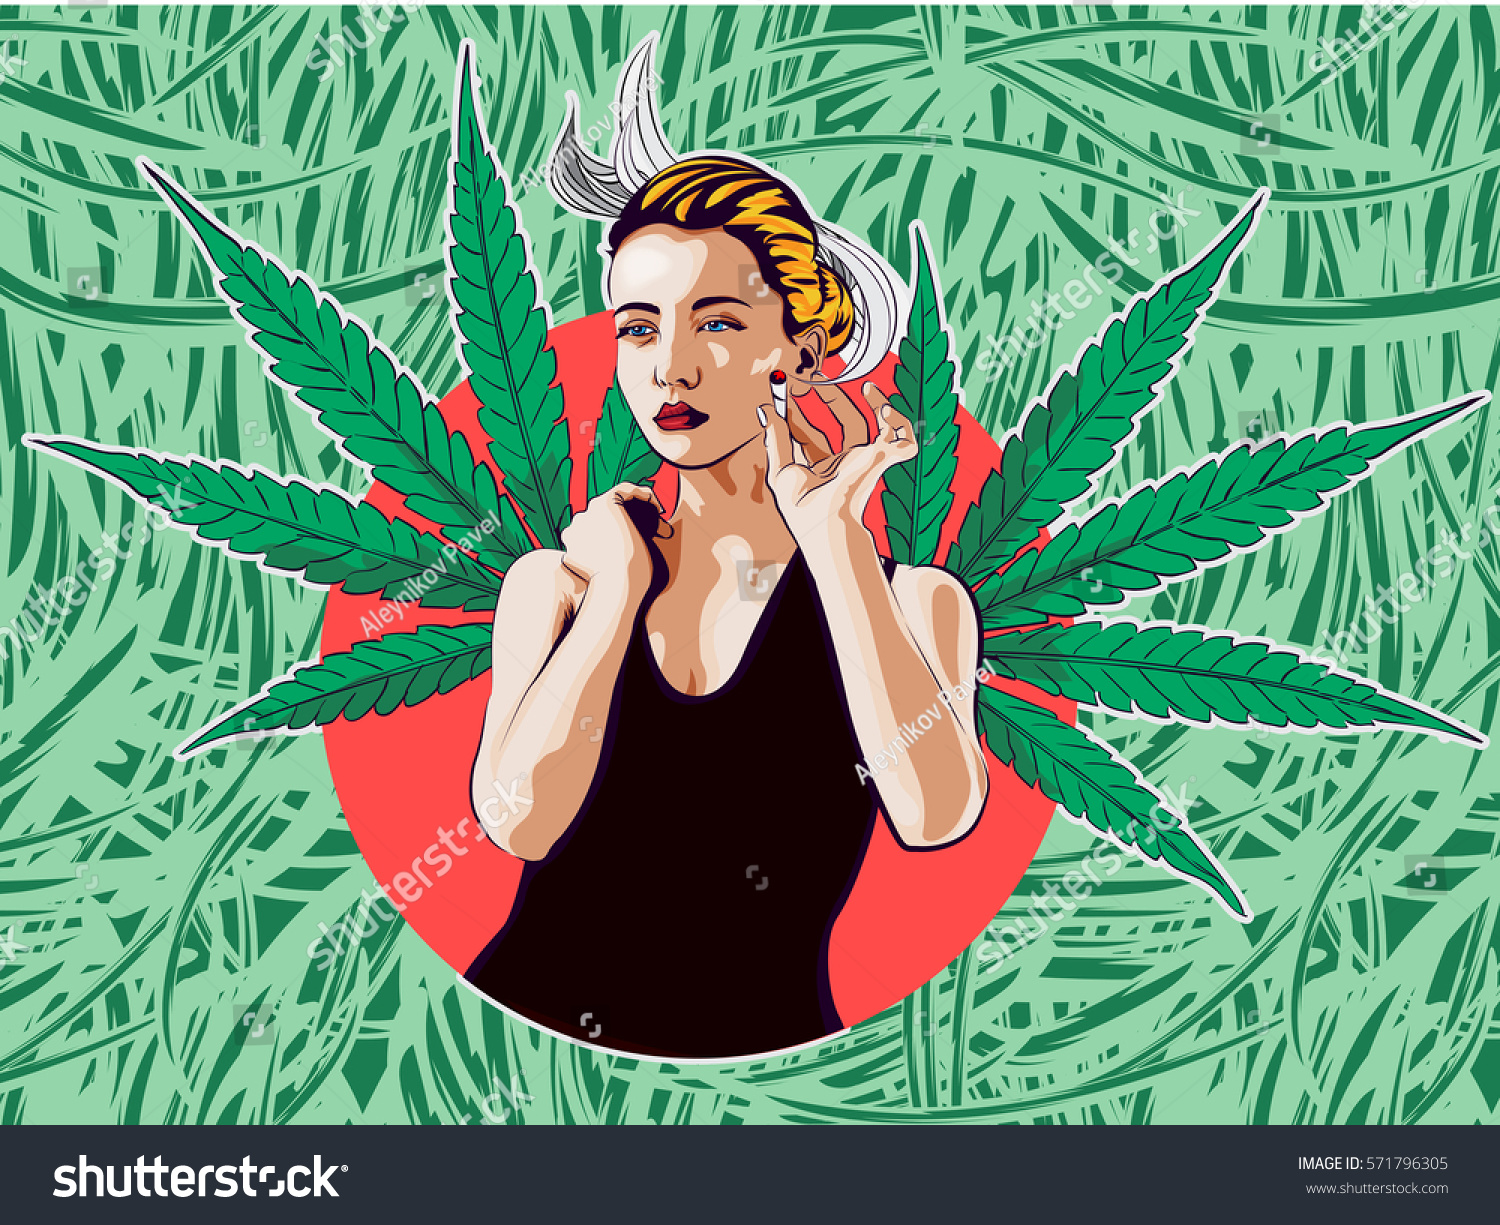 Beauty Woman Smoke Joint Cannabis Leafs: стоковые изображения в HD и миллио...